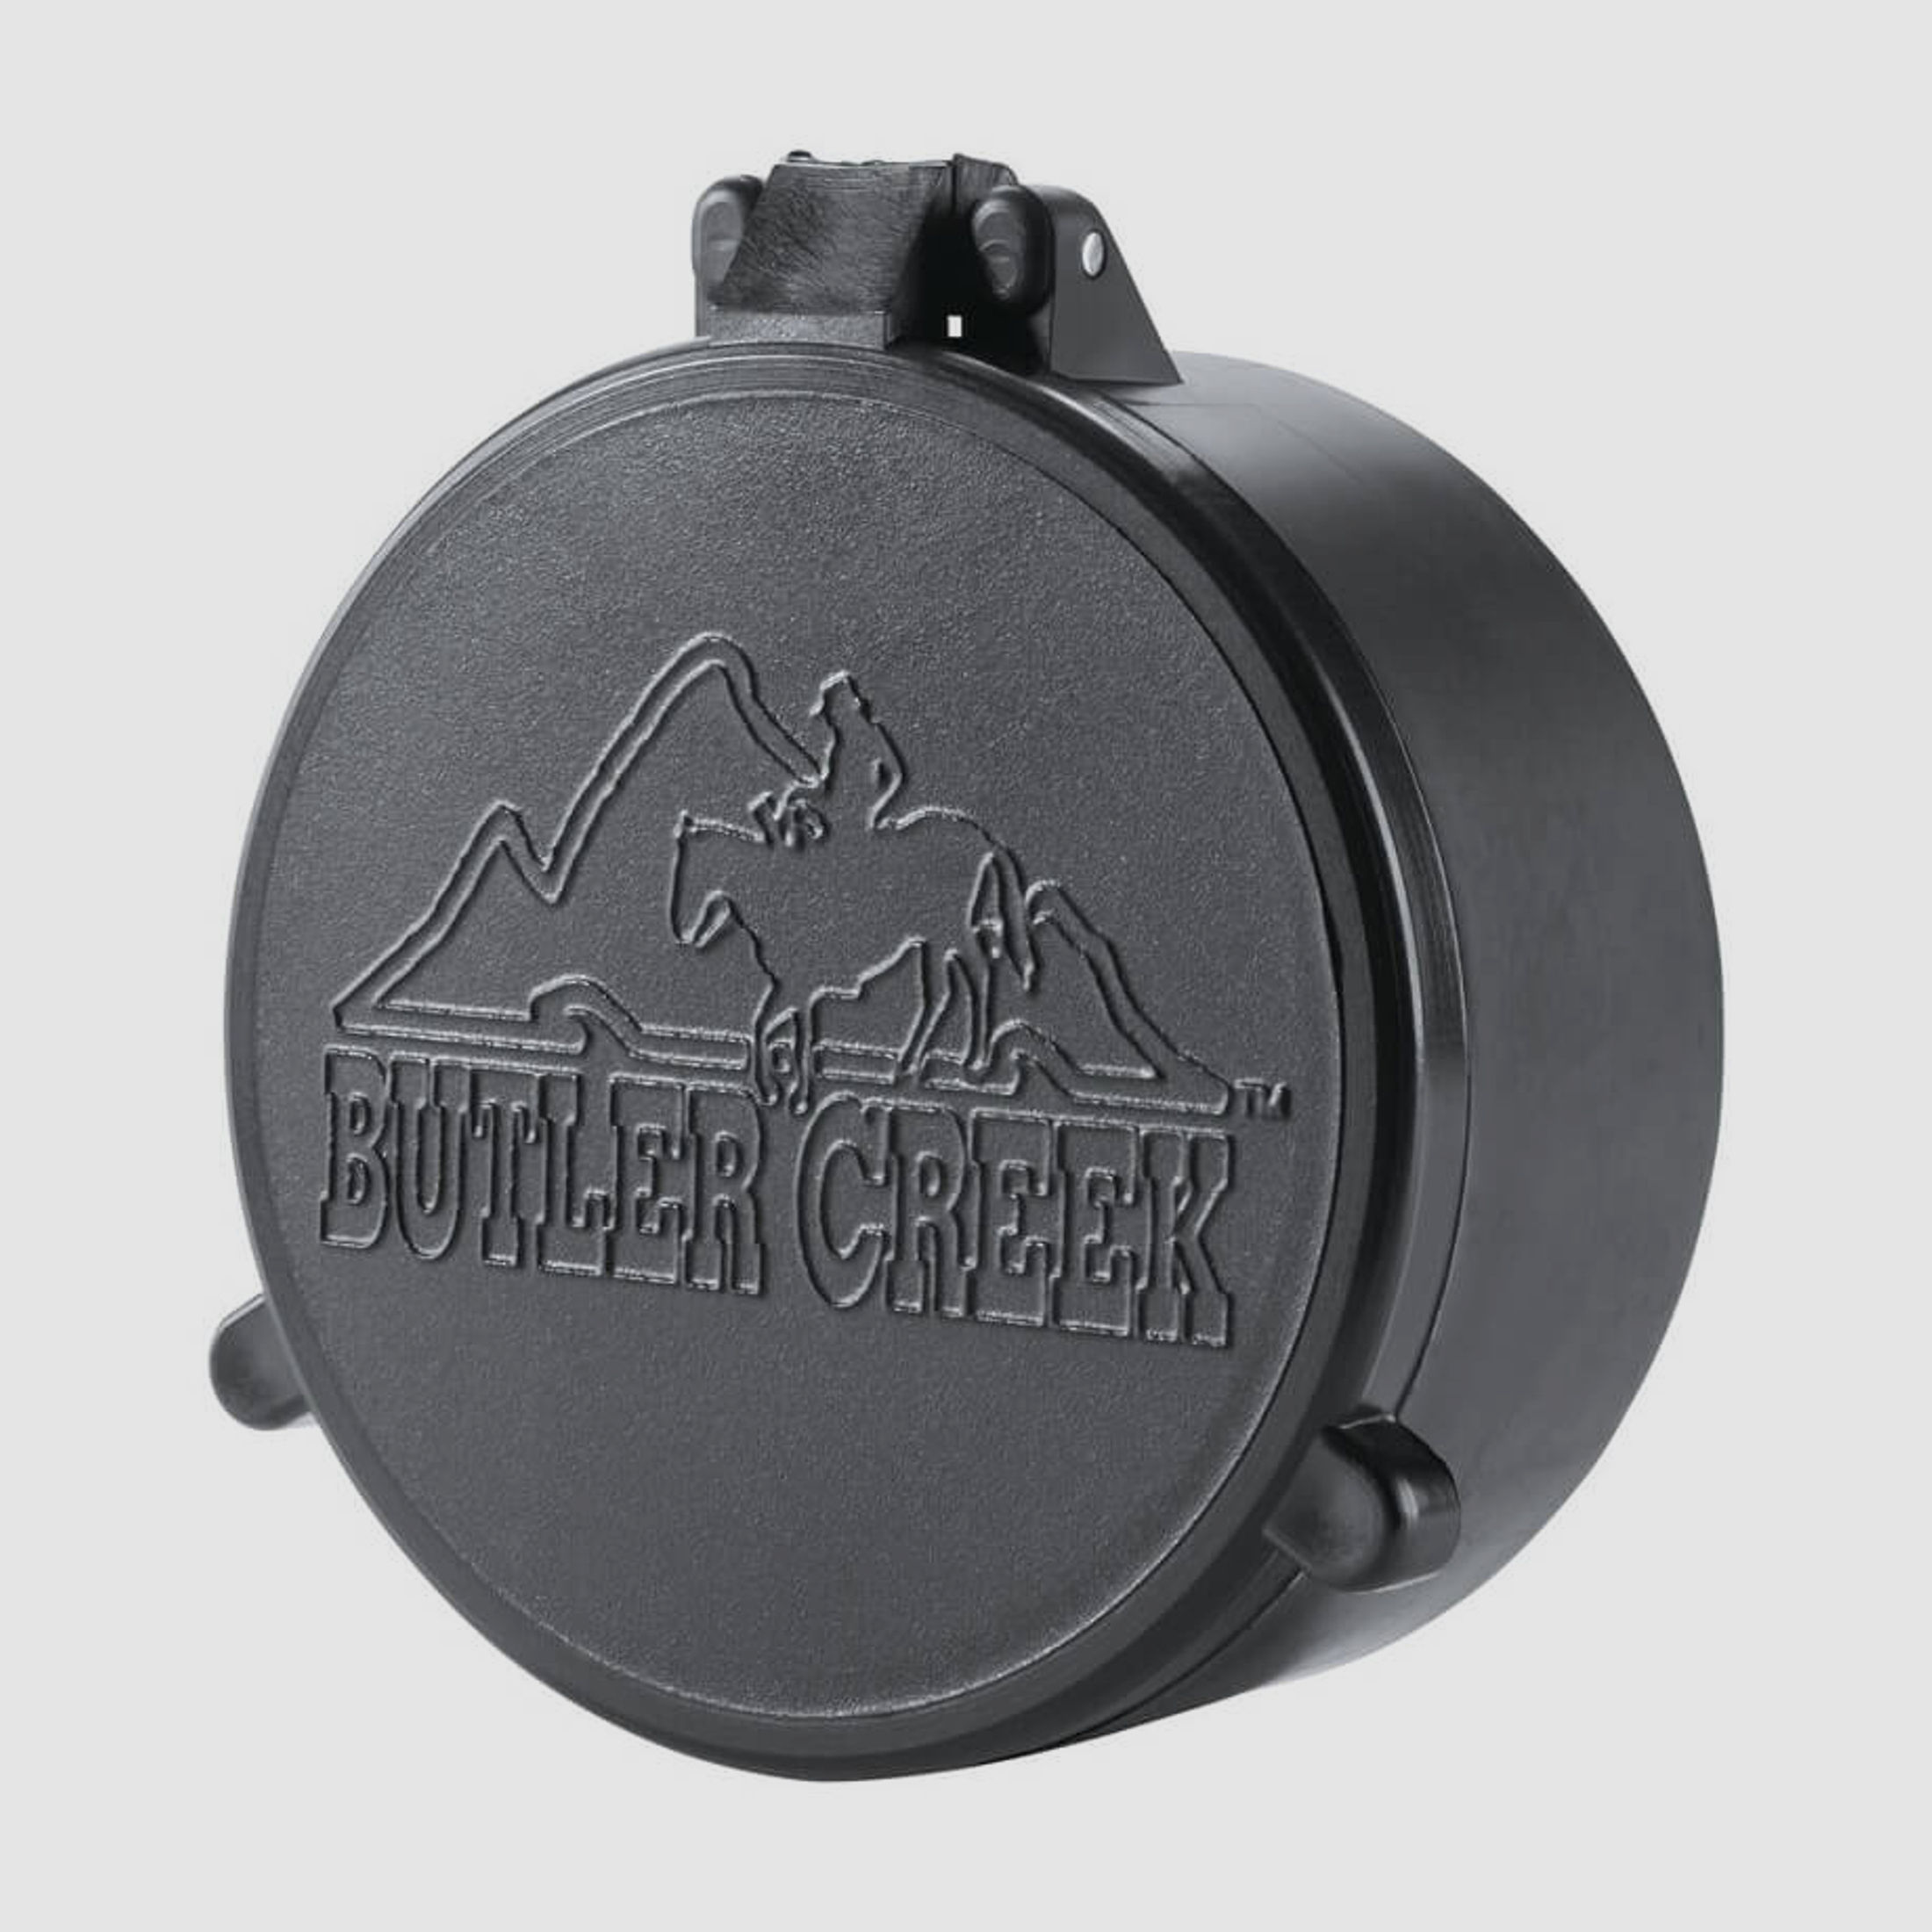 Butler Creek Objektiv Schutzkappe - 58,7mm